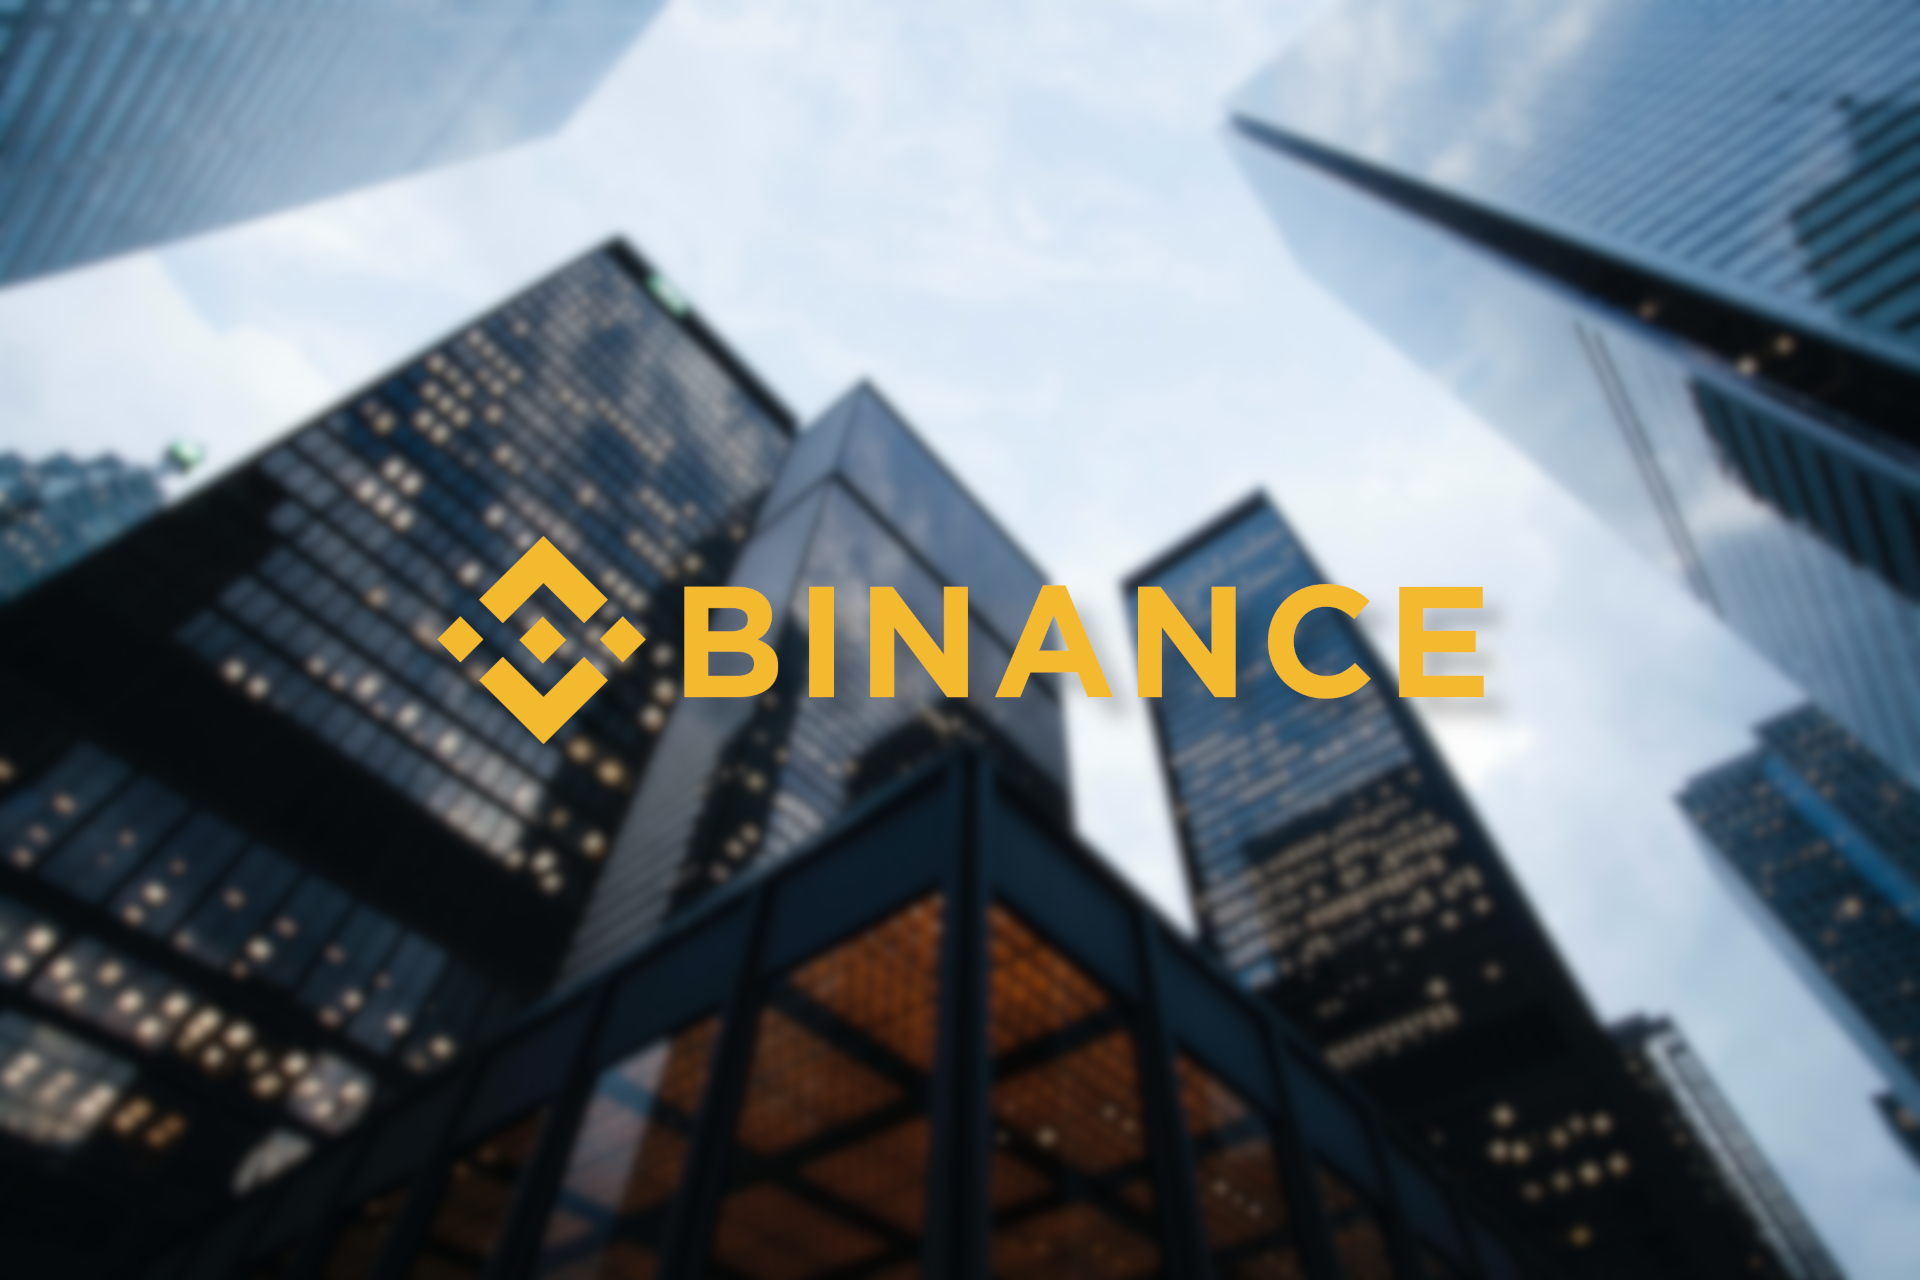 Binance cryptocurrency exchange